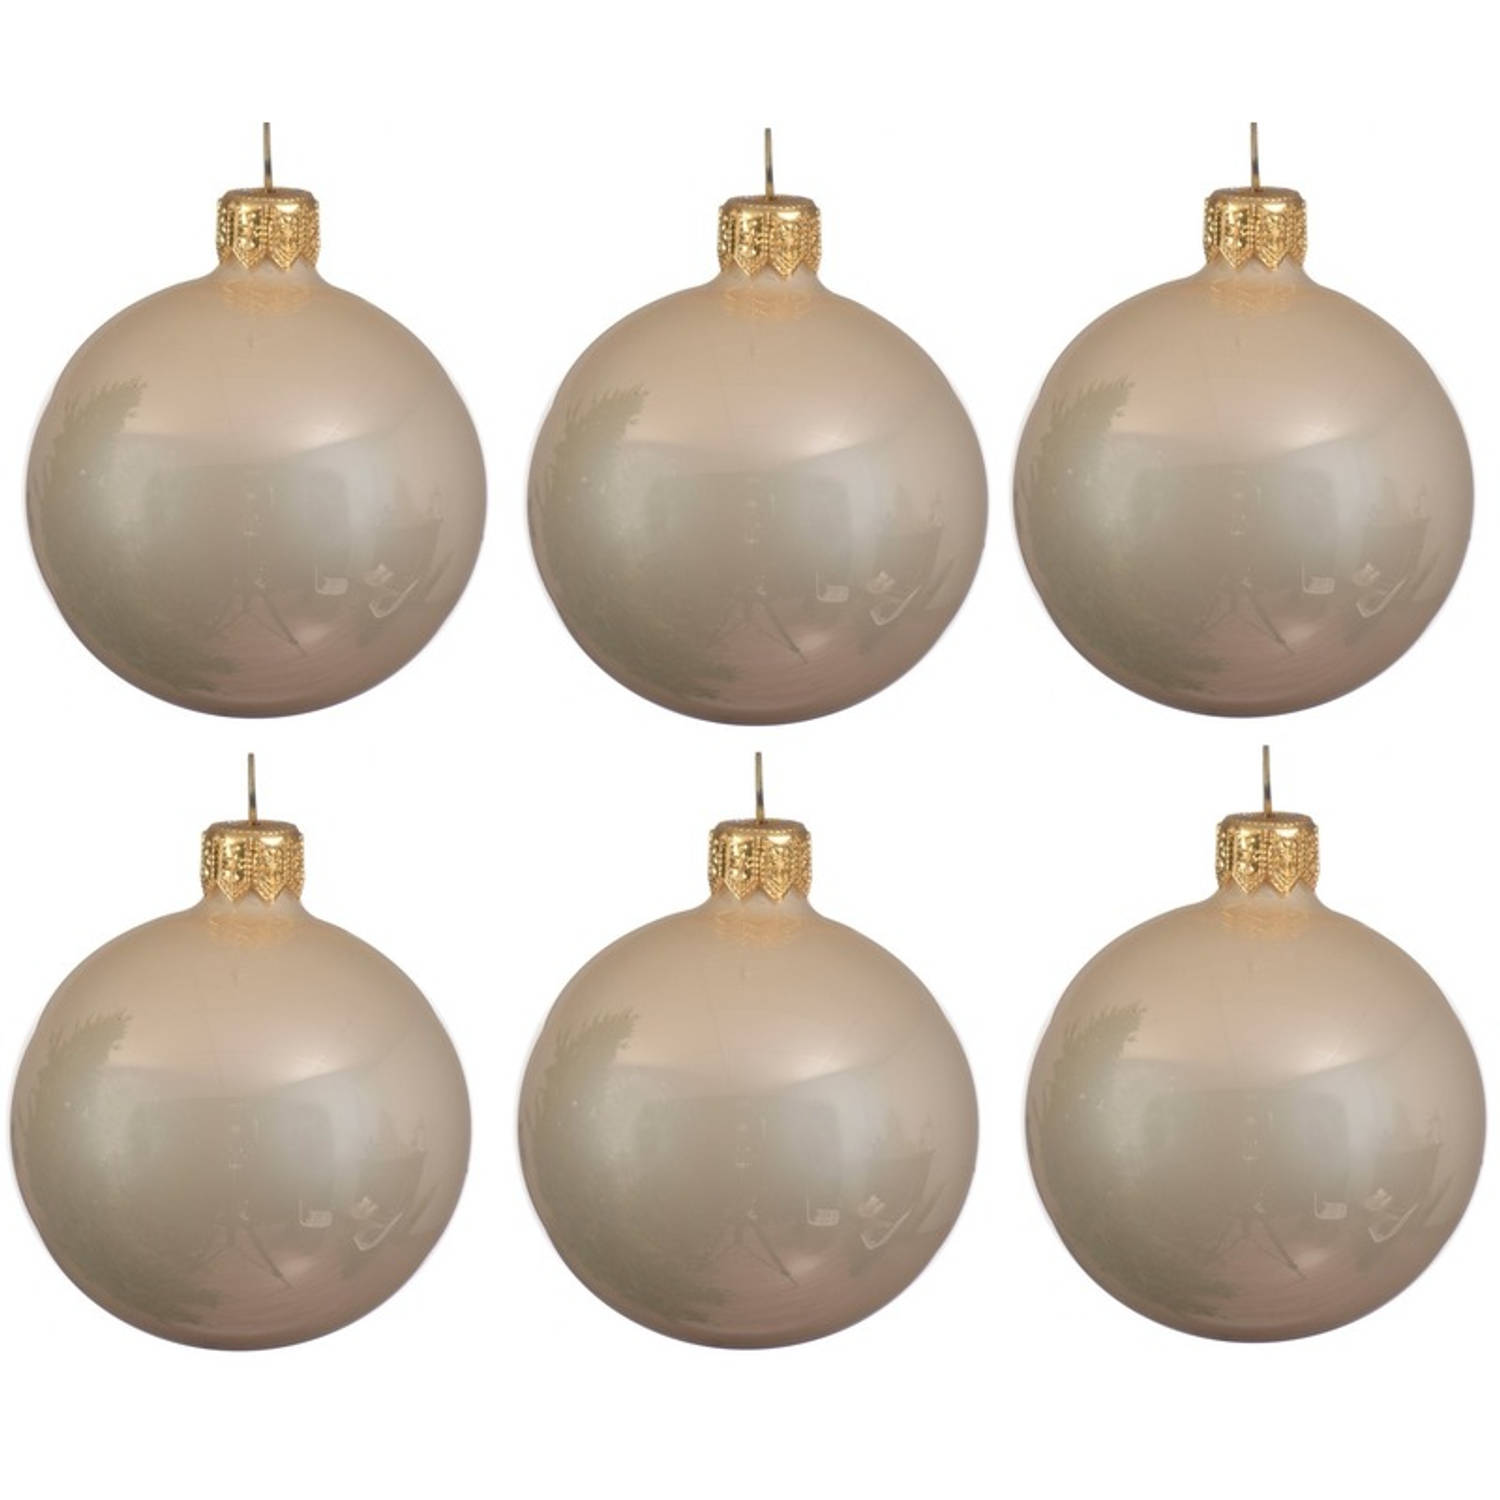 6x Licht Parel-champagne Glazen Kerstballen 6 Cm Glans-glanzende Kerstboomversiering Licht Parel-cha